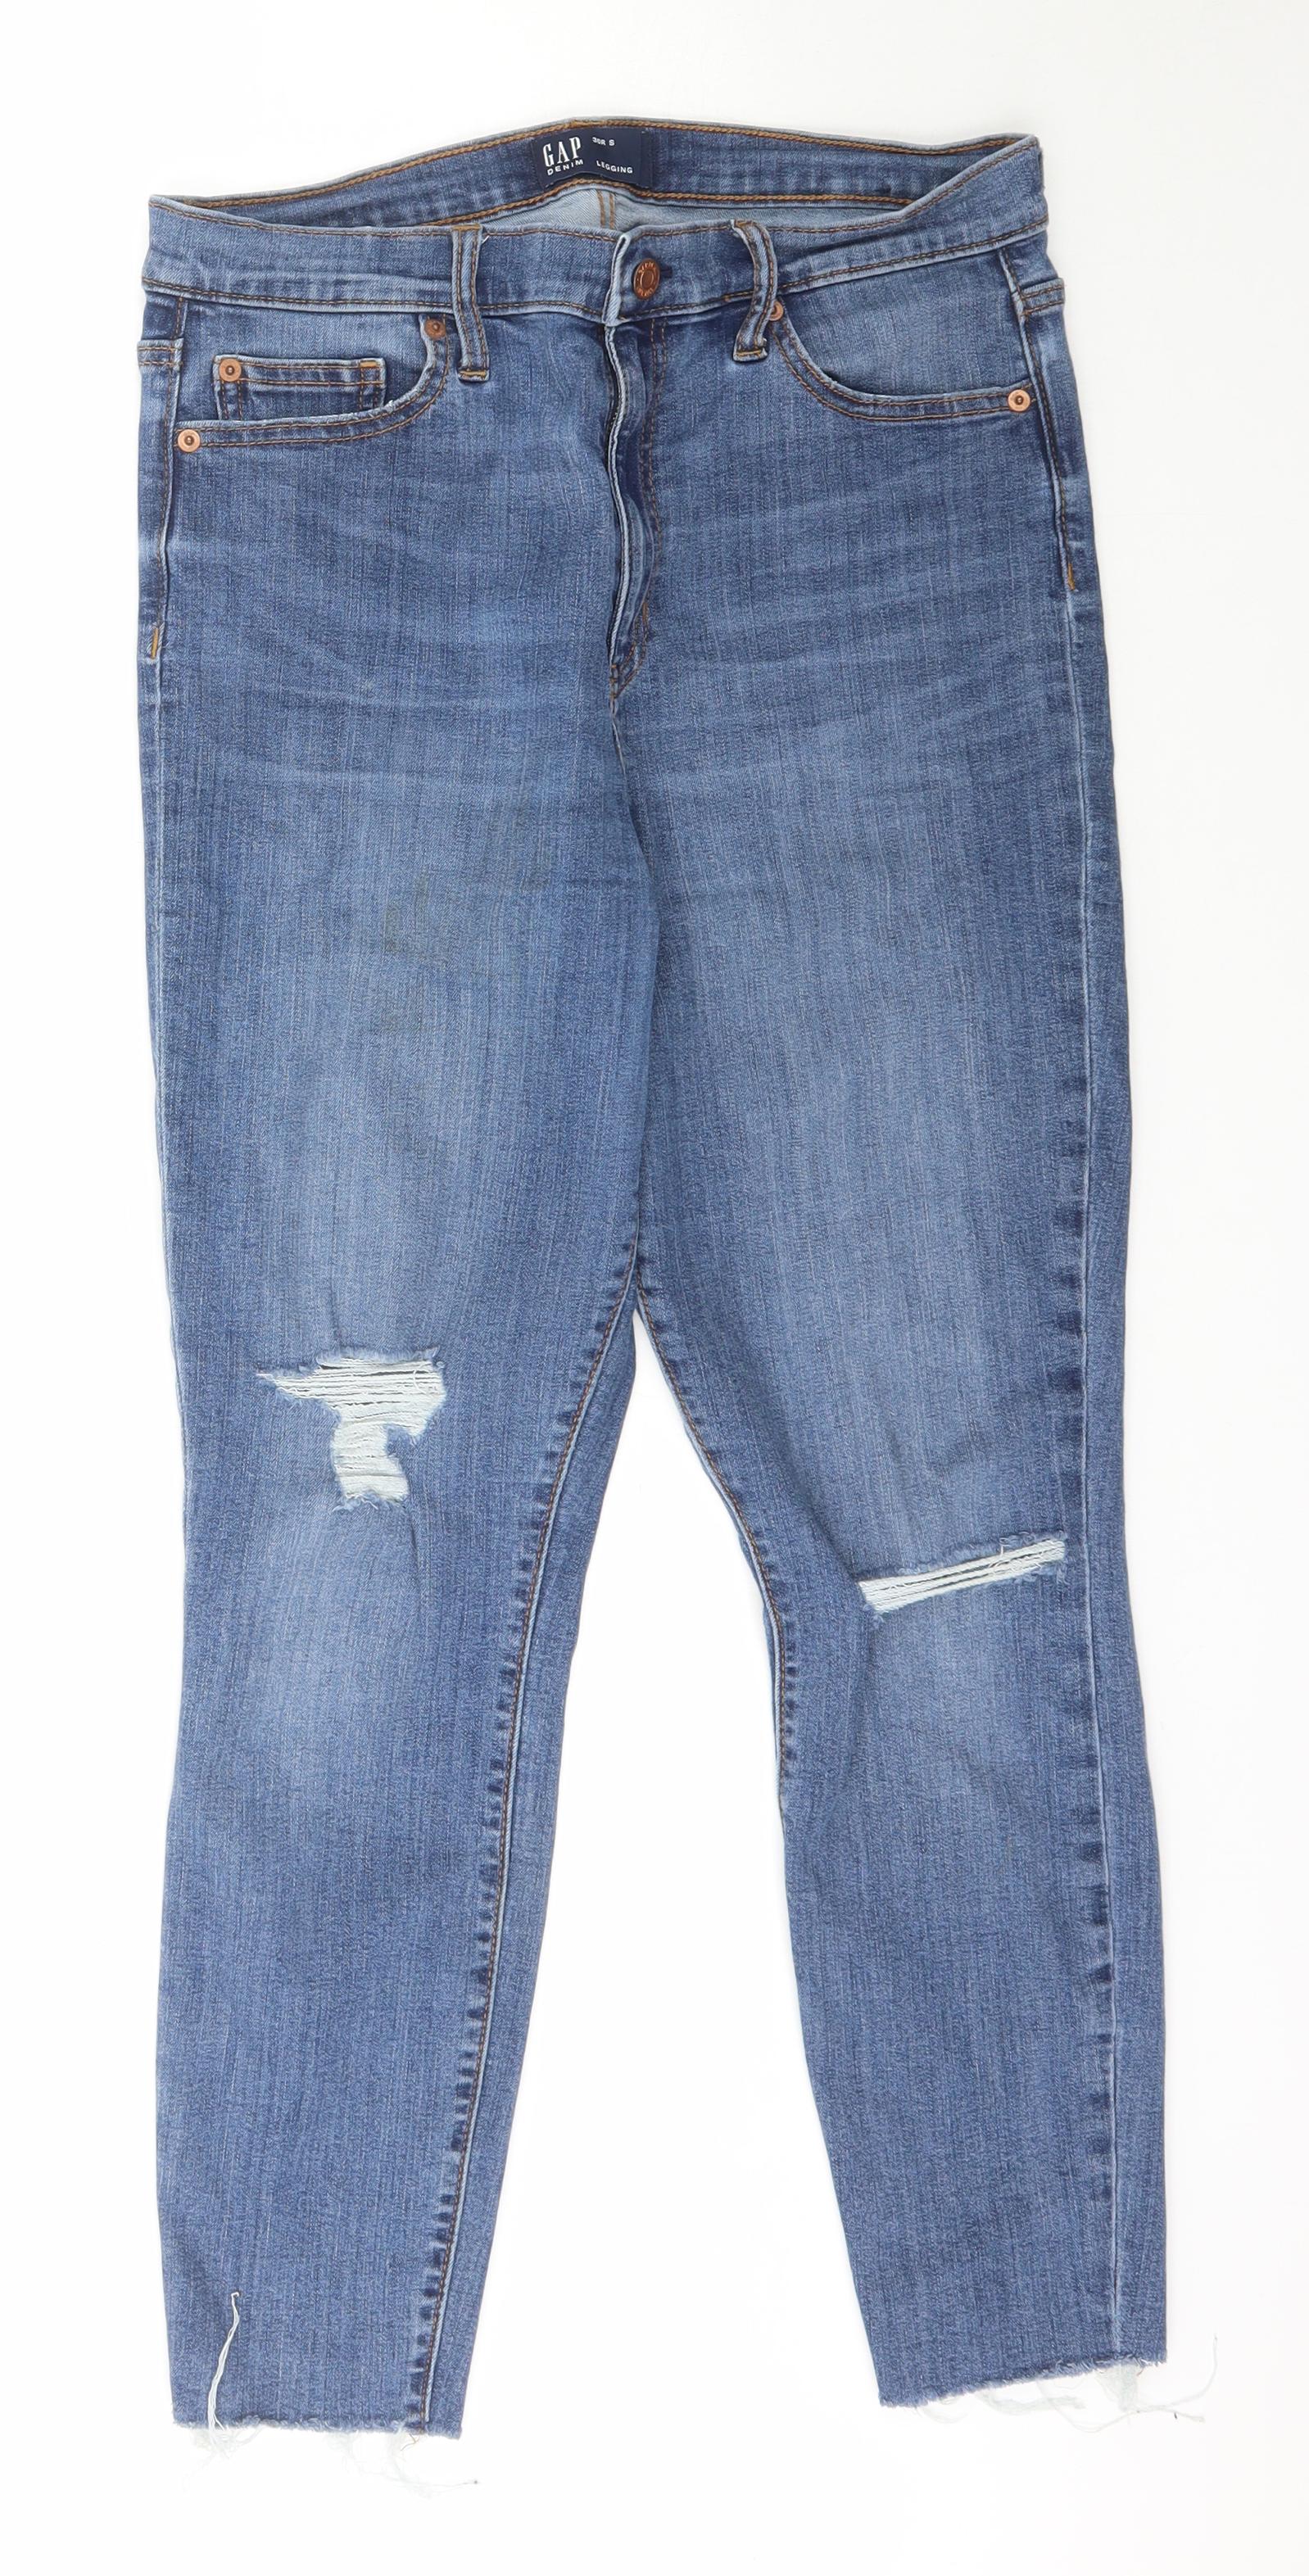 Gap Womens Blue Cotton Skinny Jeans Size 30 L30 in Regular Zip – Preworn Ltd